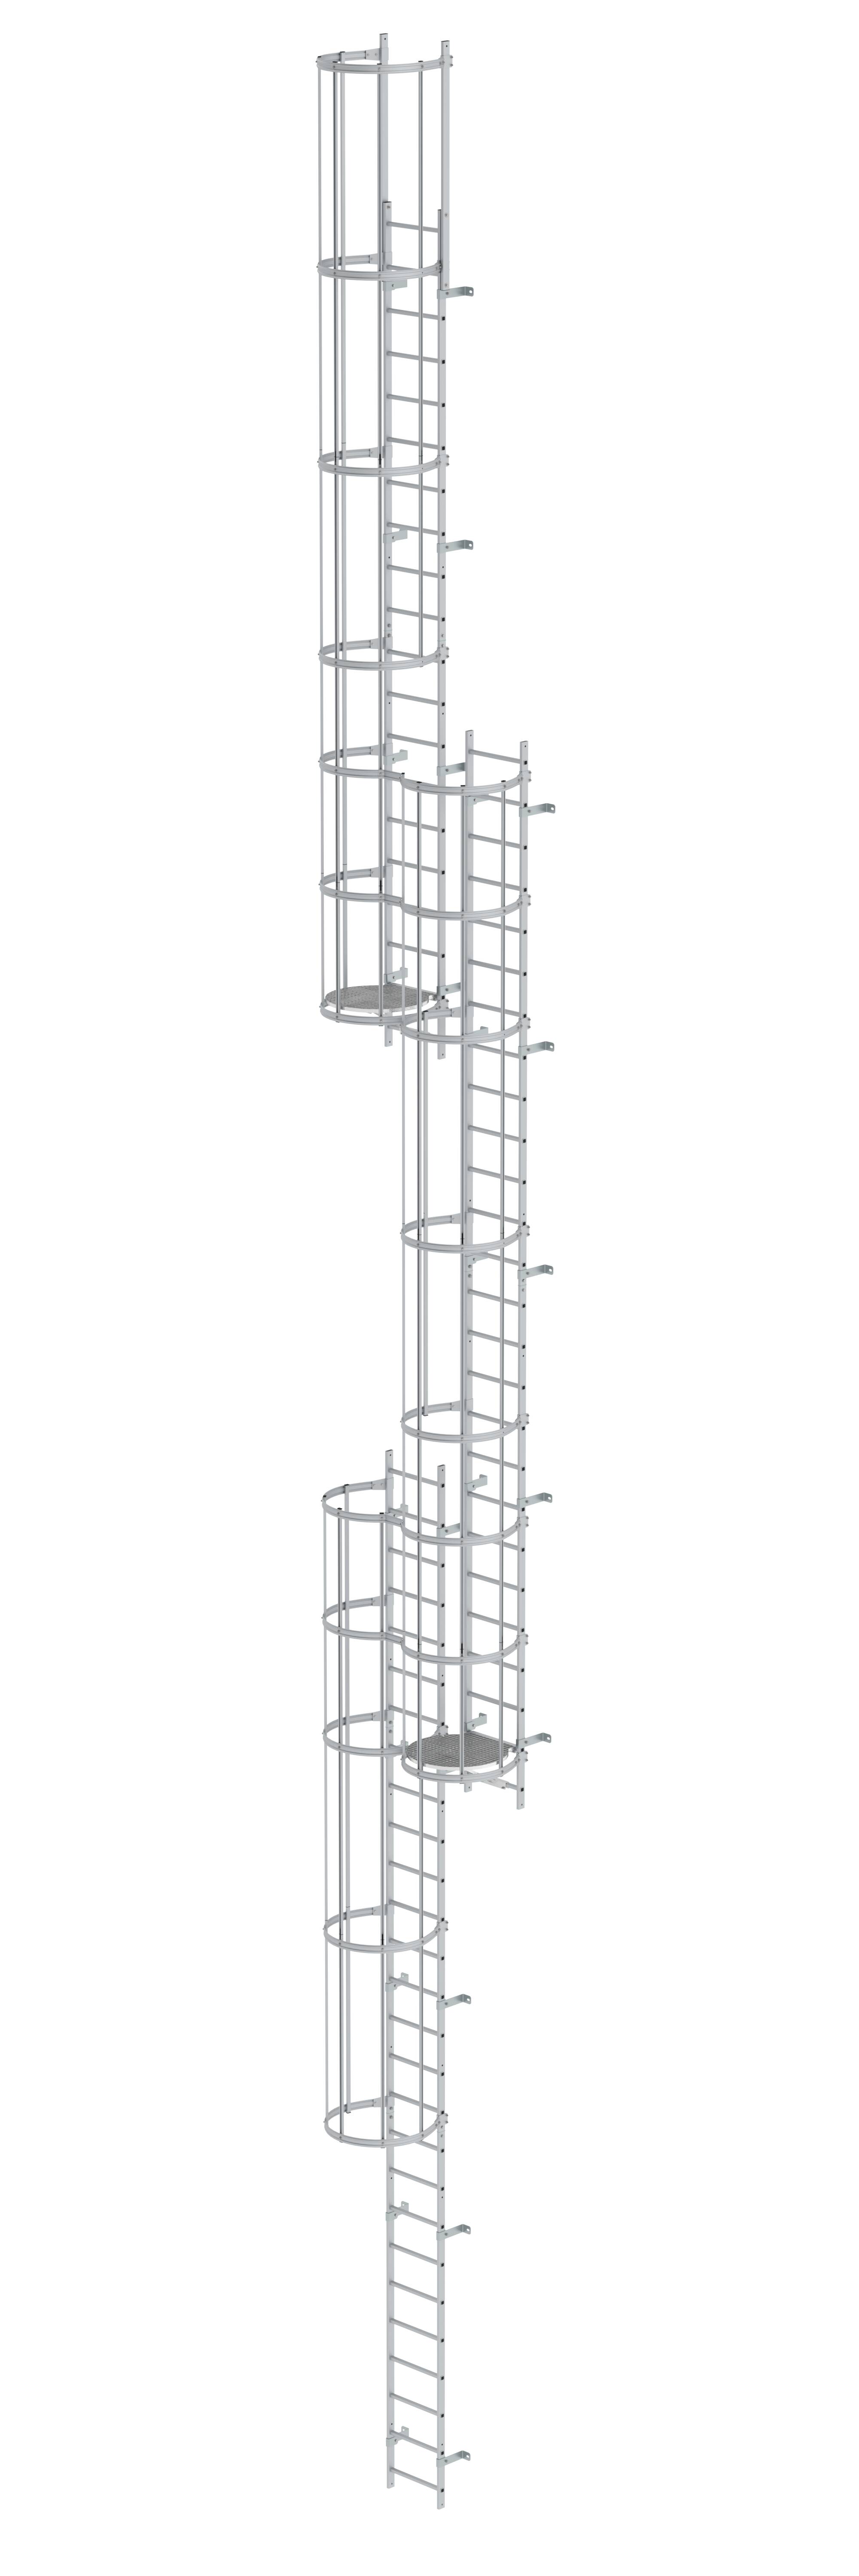 Mehrzügige Steigleiter mit Rückenschutz (Notleiter) Aluminium eloxiert 17,16m